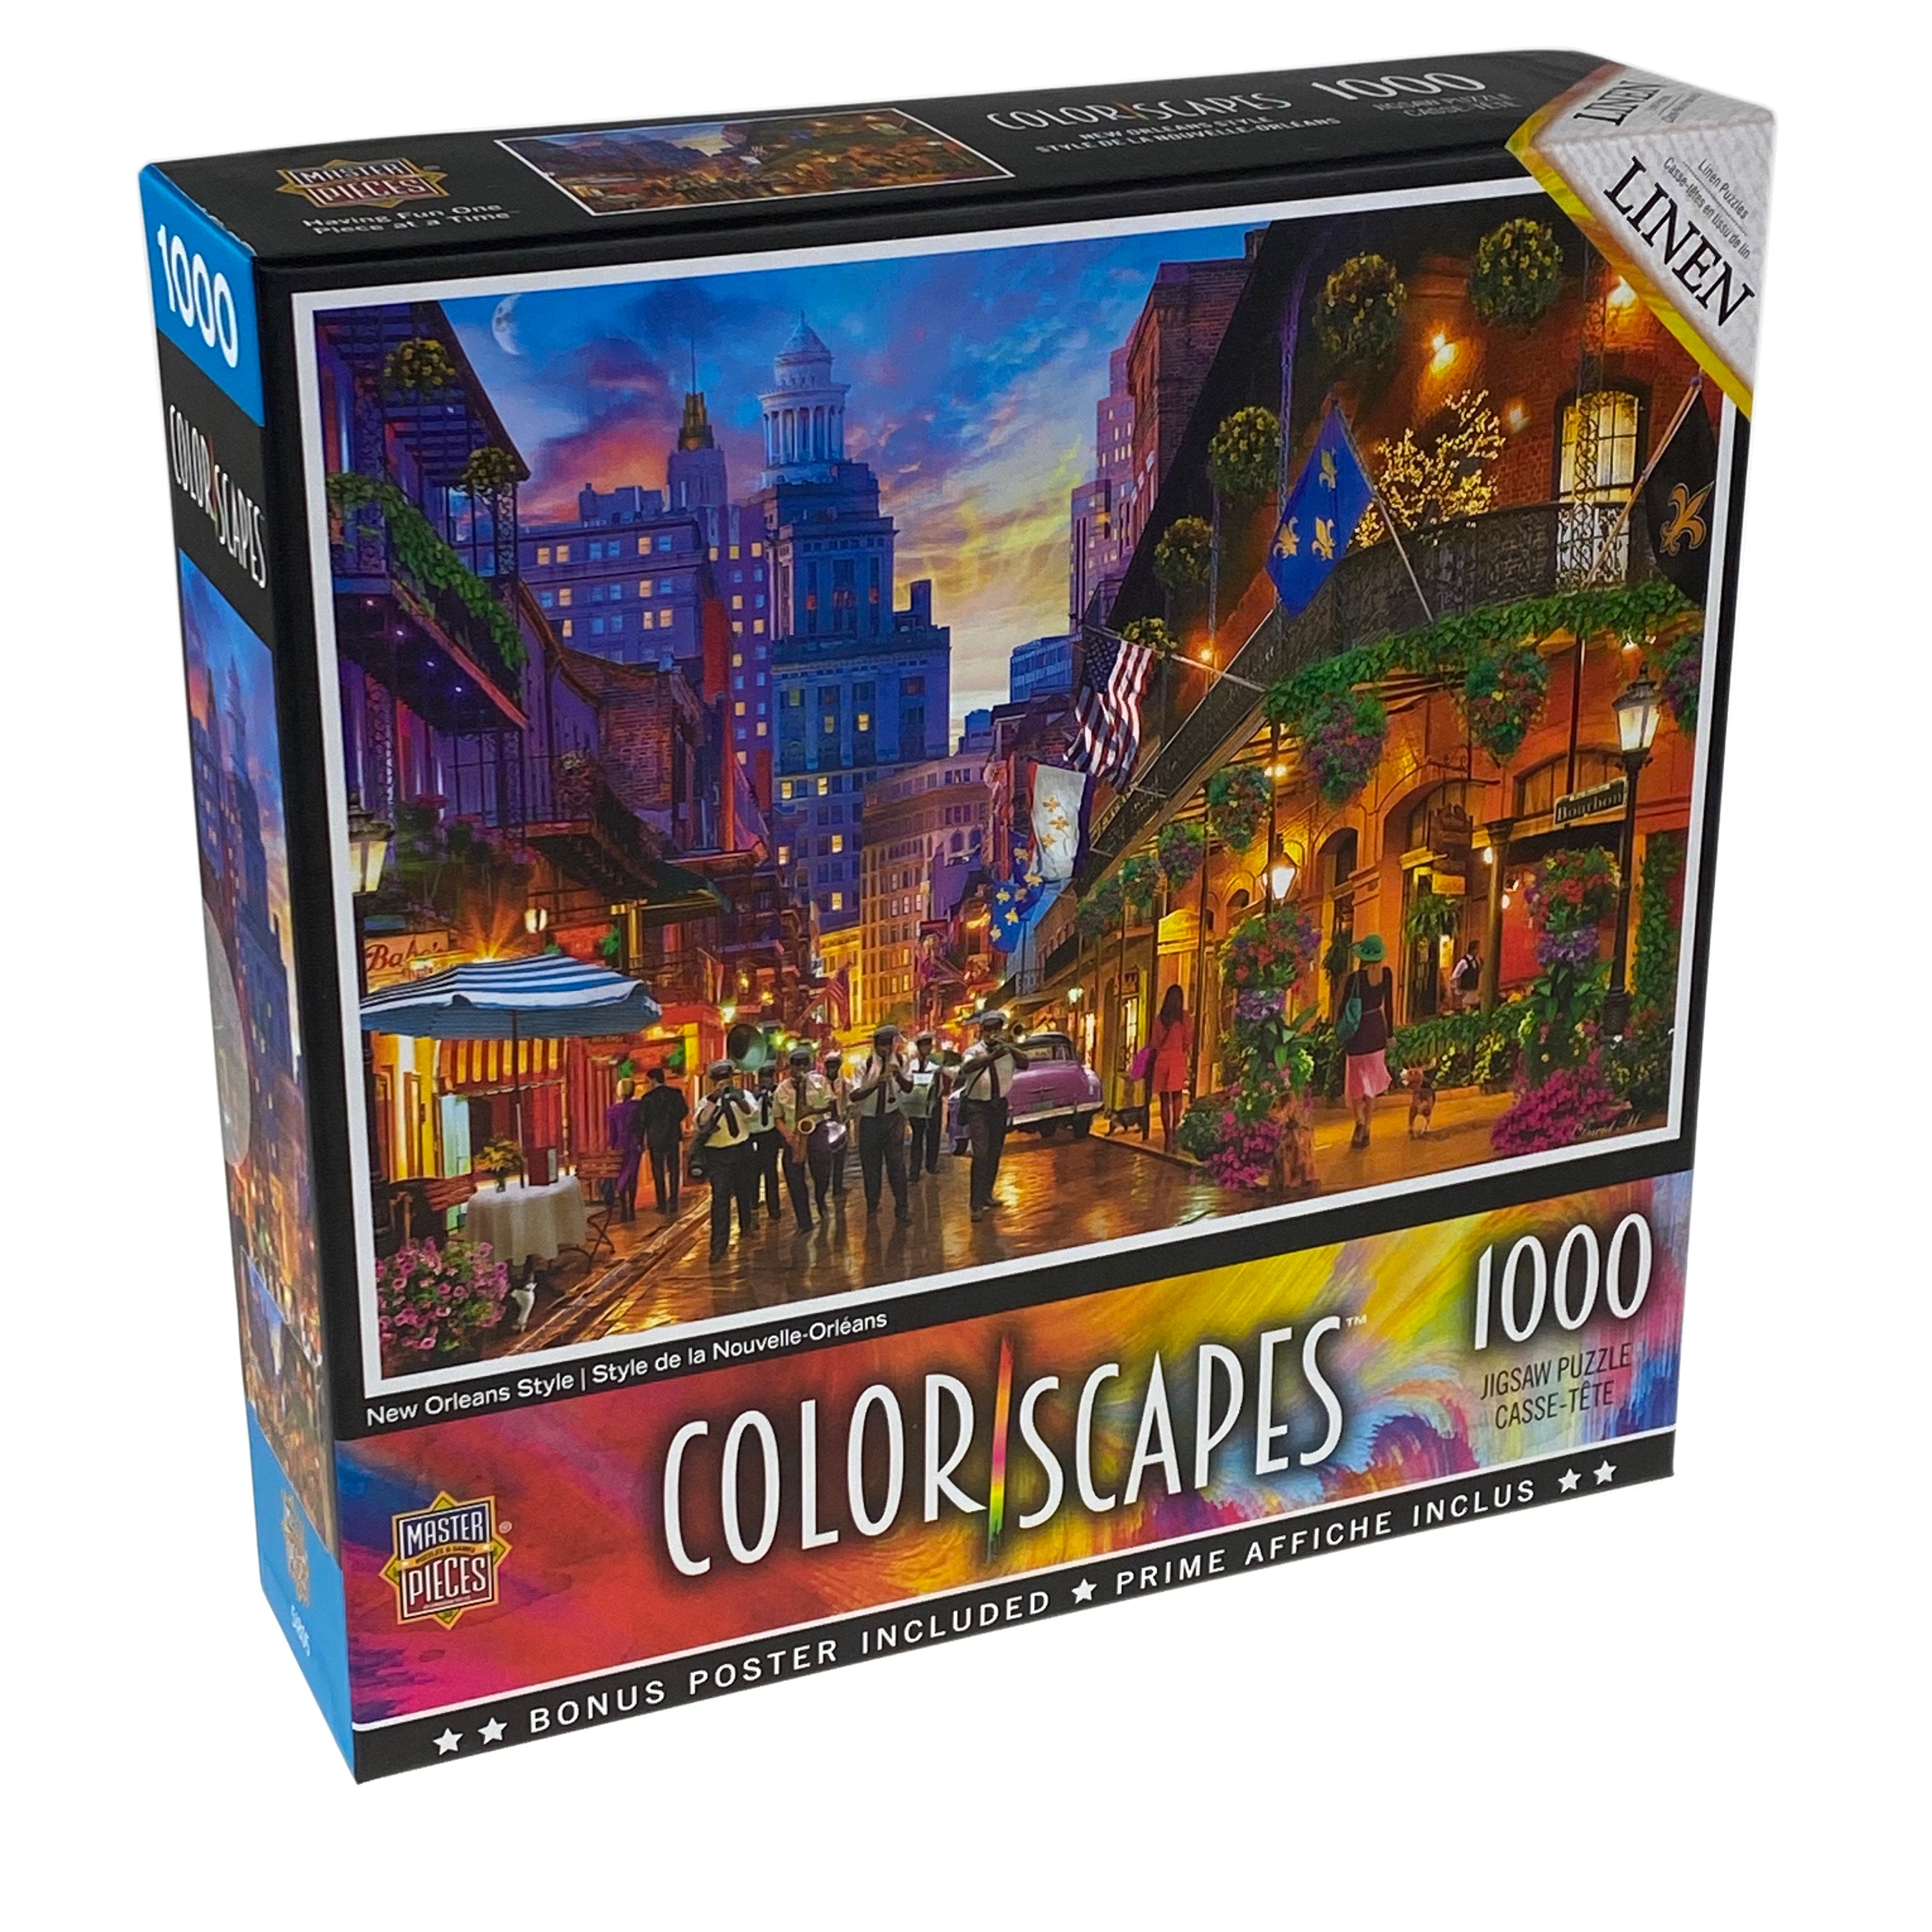 Colorscapes New Orleans Style 1000 Piece Puzzle    